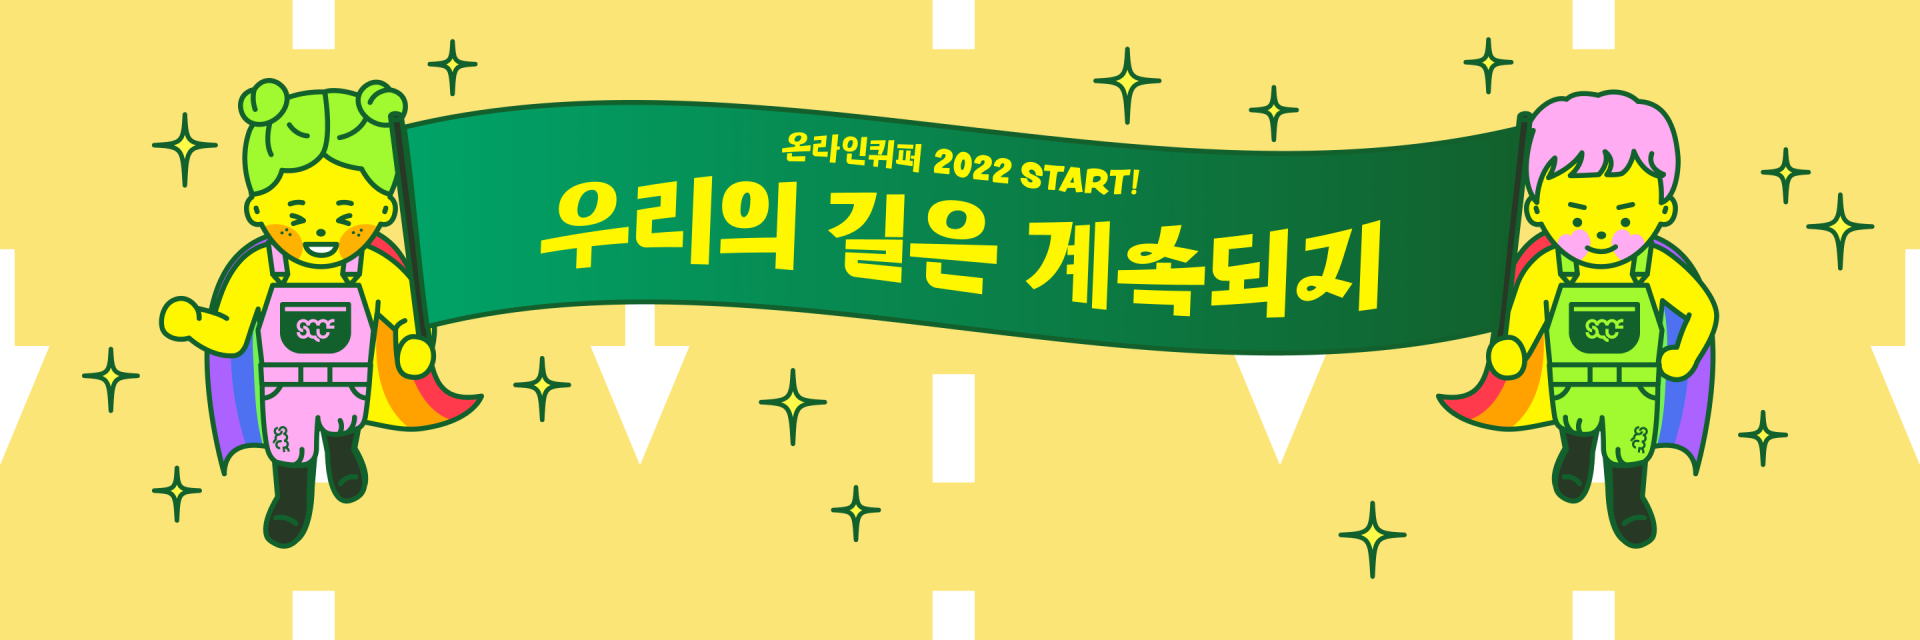 서울퀴퍼 옷과 무지개 망토를 입은 두 캐릭터가 긴 초록색 현수막의 양끝을 들고 있다. 현수막의 중앙에는 "온라인퀴퍼 2022 START! 우리의 길은 계속되지"라는 글자가 써있다.